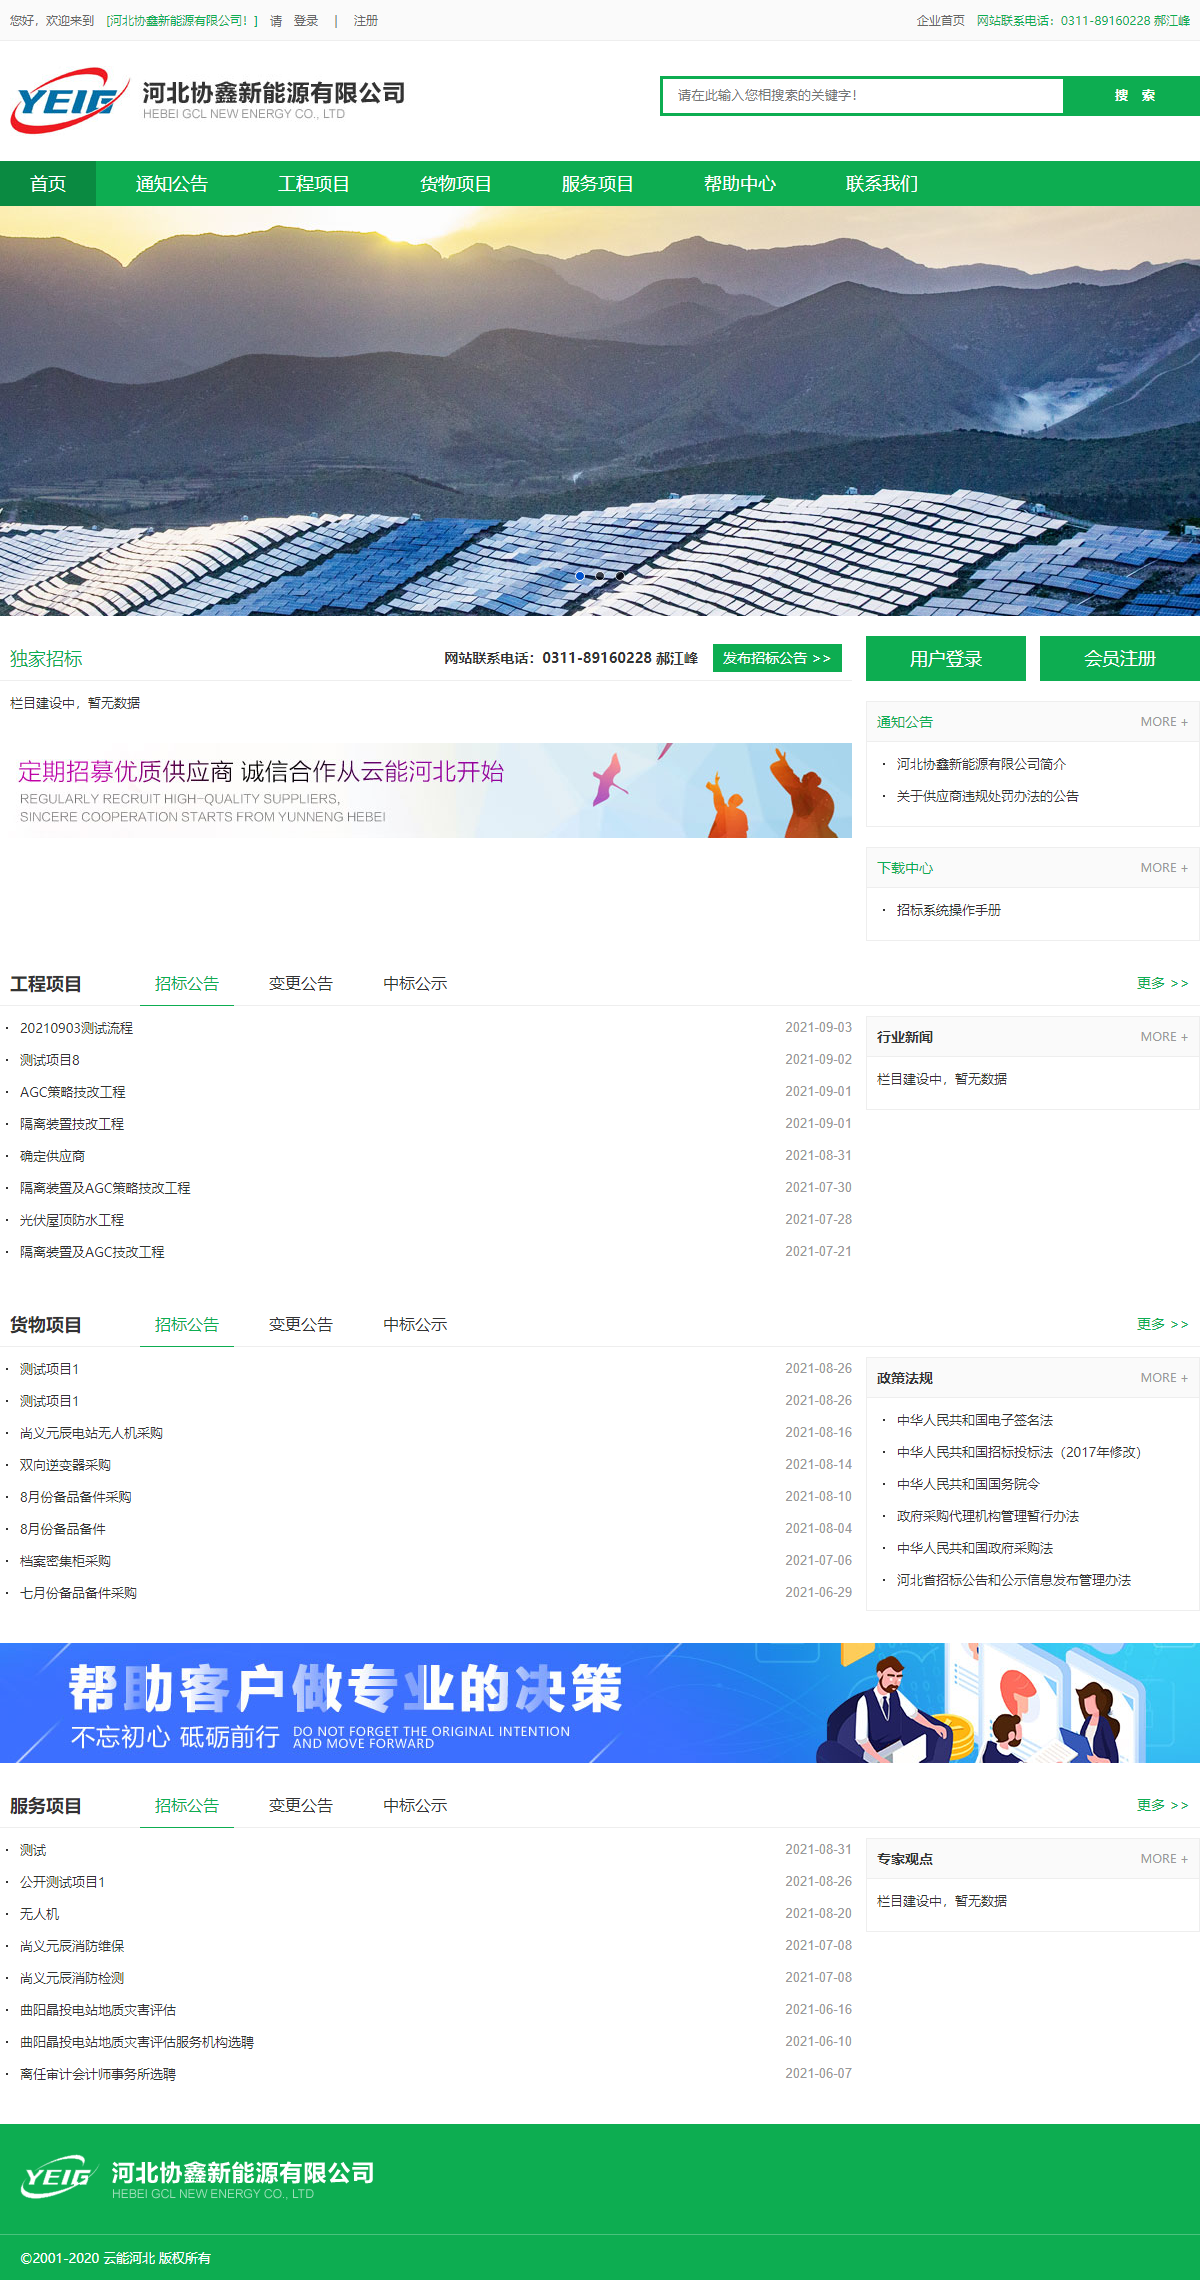 尚义元辰新能源开发有限公司网站案例